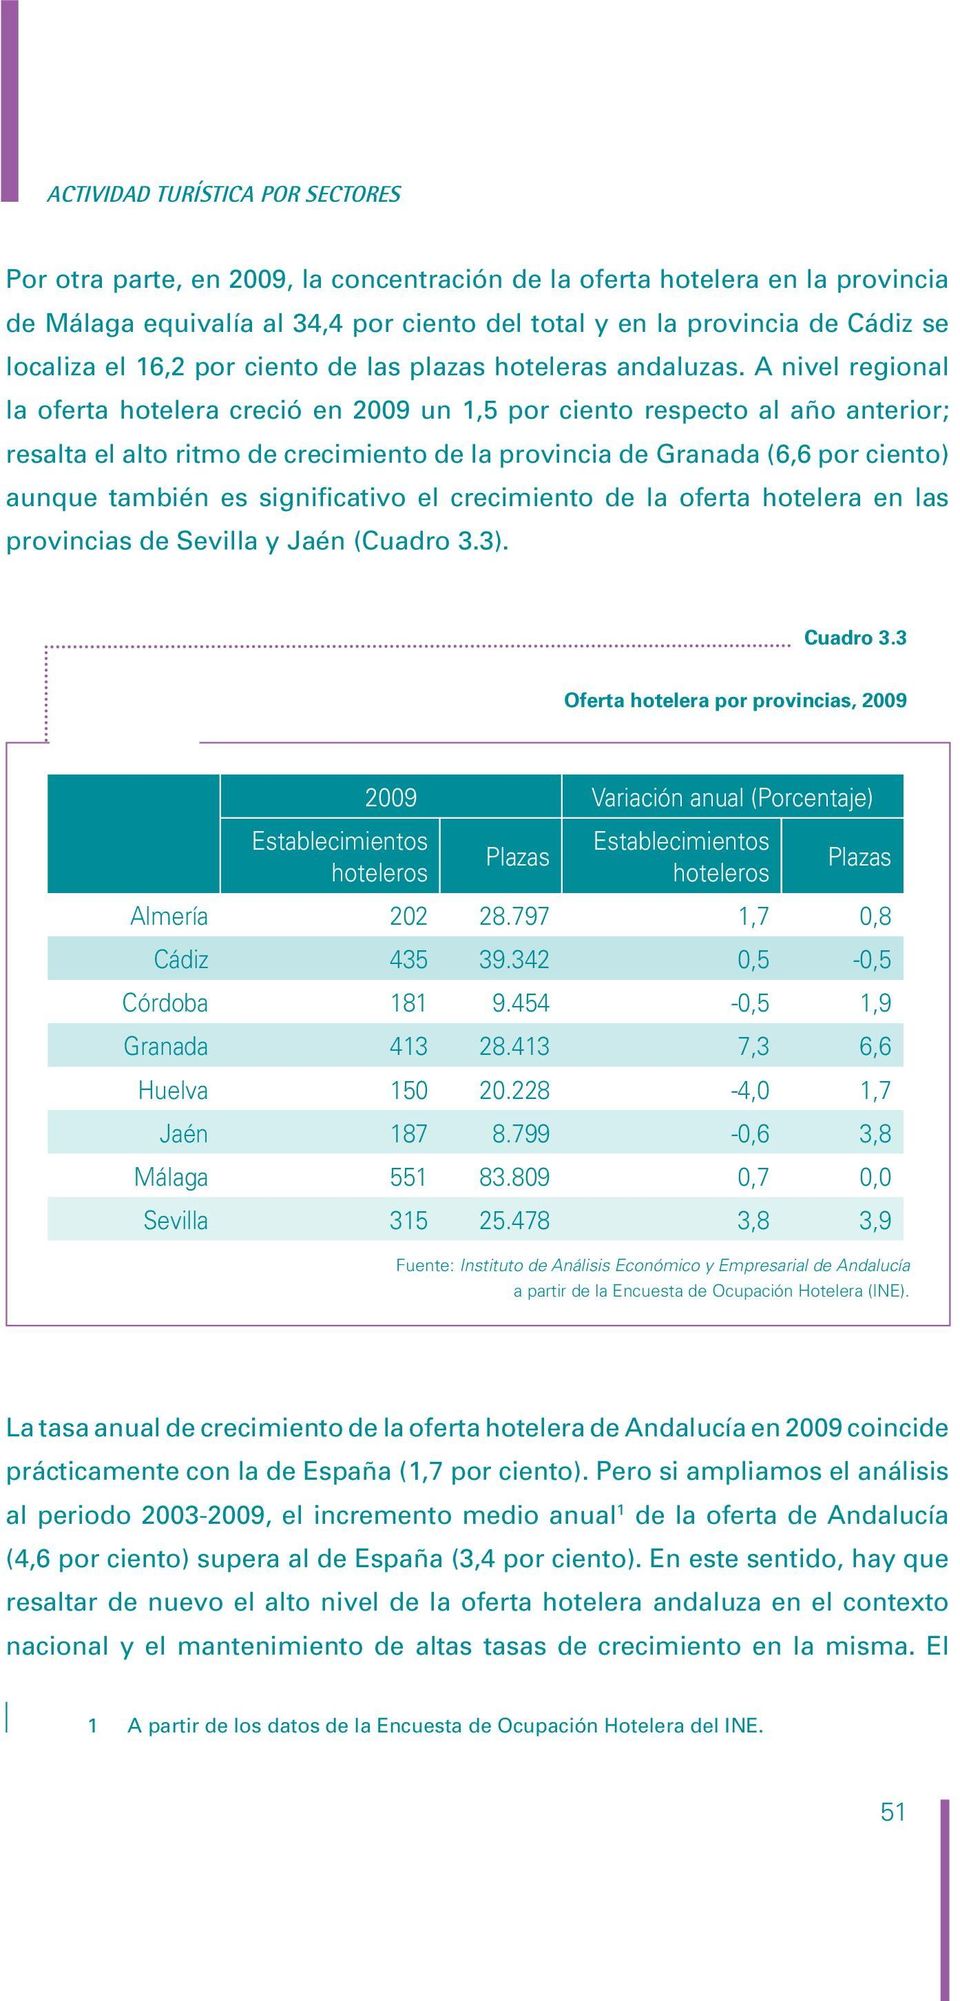 A nivel regional la oferta hotelera creció en 2009 un 1,5 por ciento respecto al año anterior; resalta el alto ritmo de crecimiento de la provincia de Granada (6,6 por ciento) aunque también es